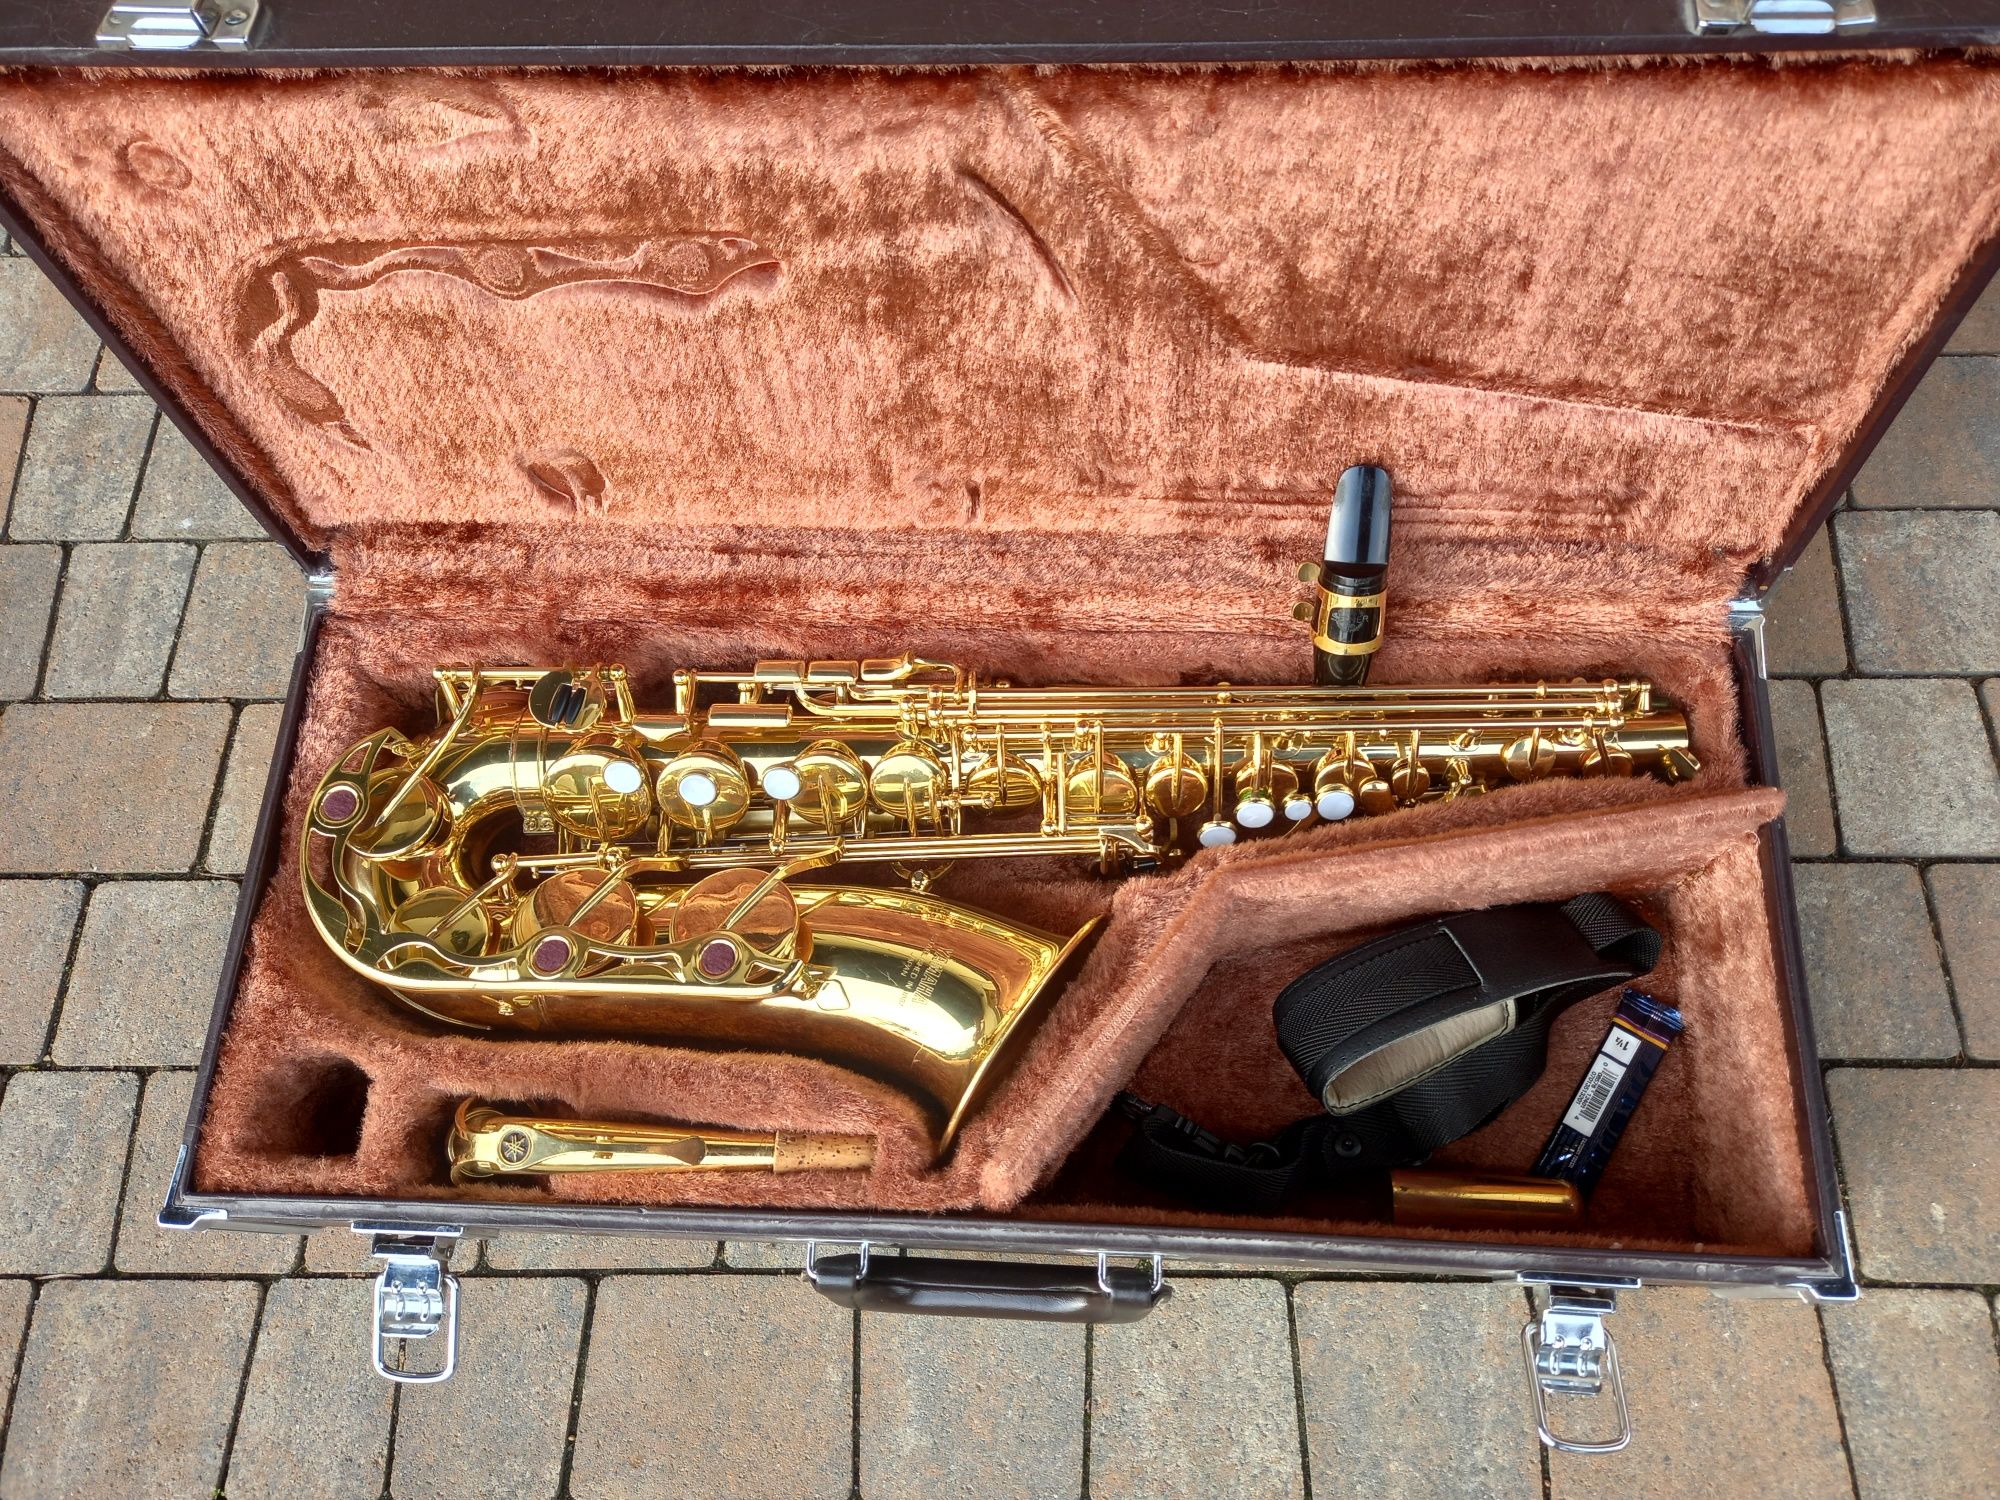 YAS 32 Saksofon altowy Yamaha